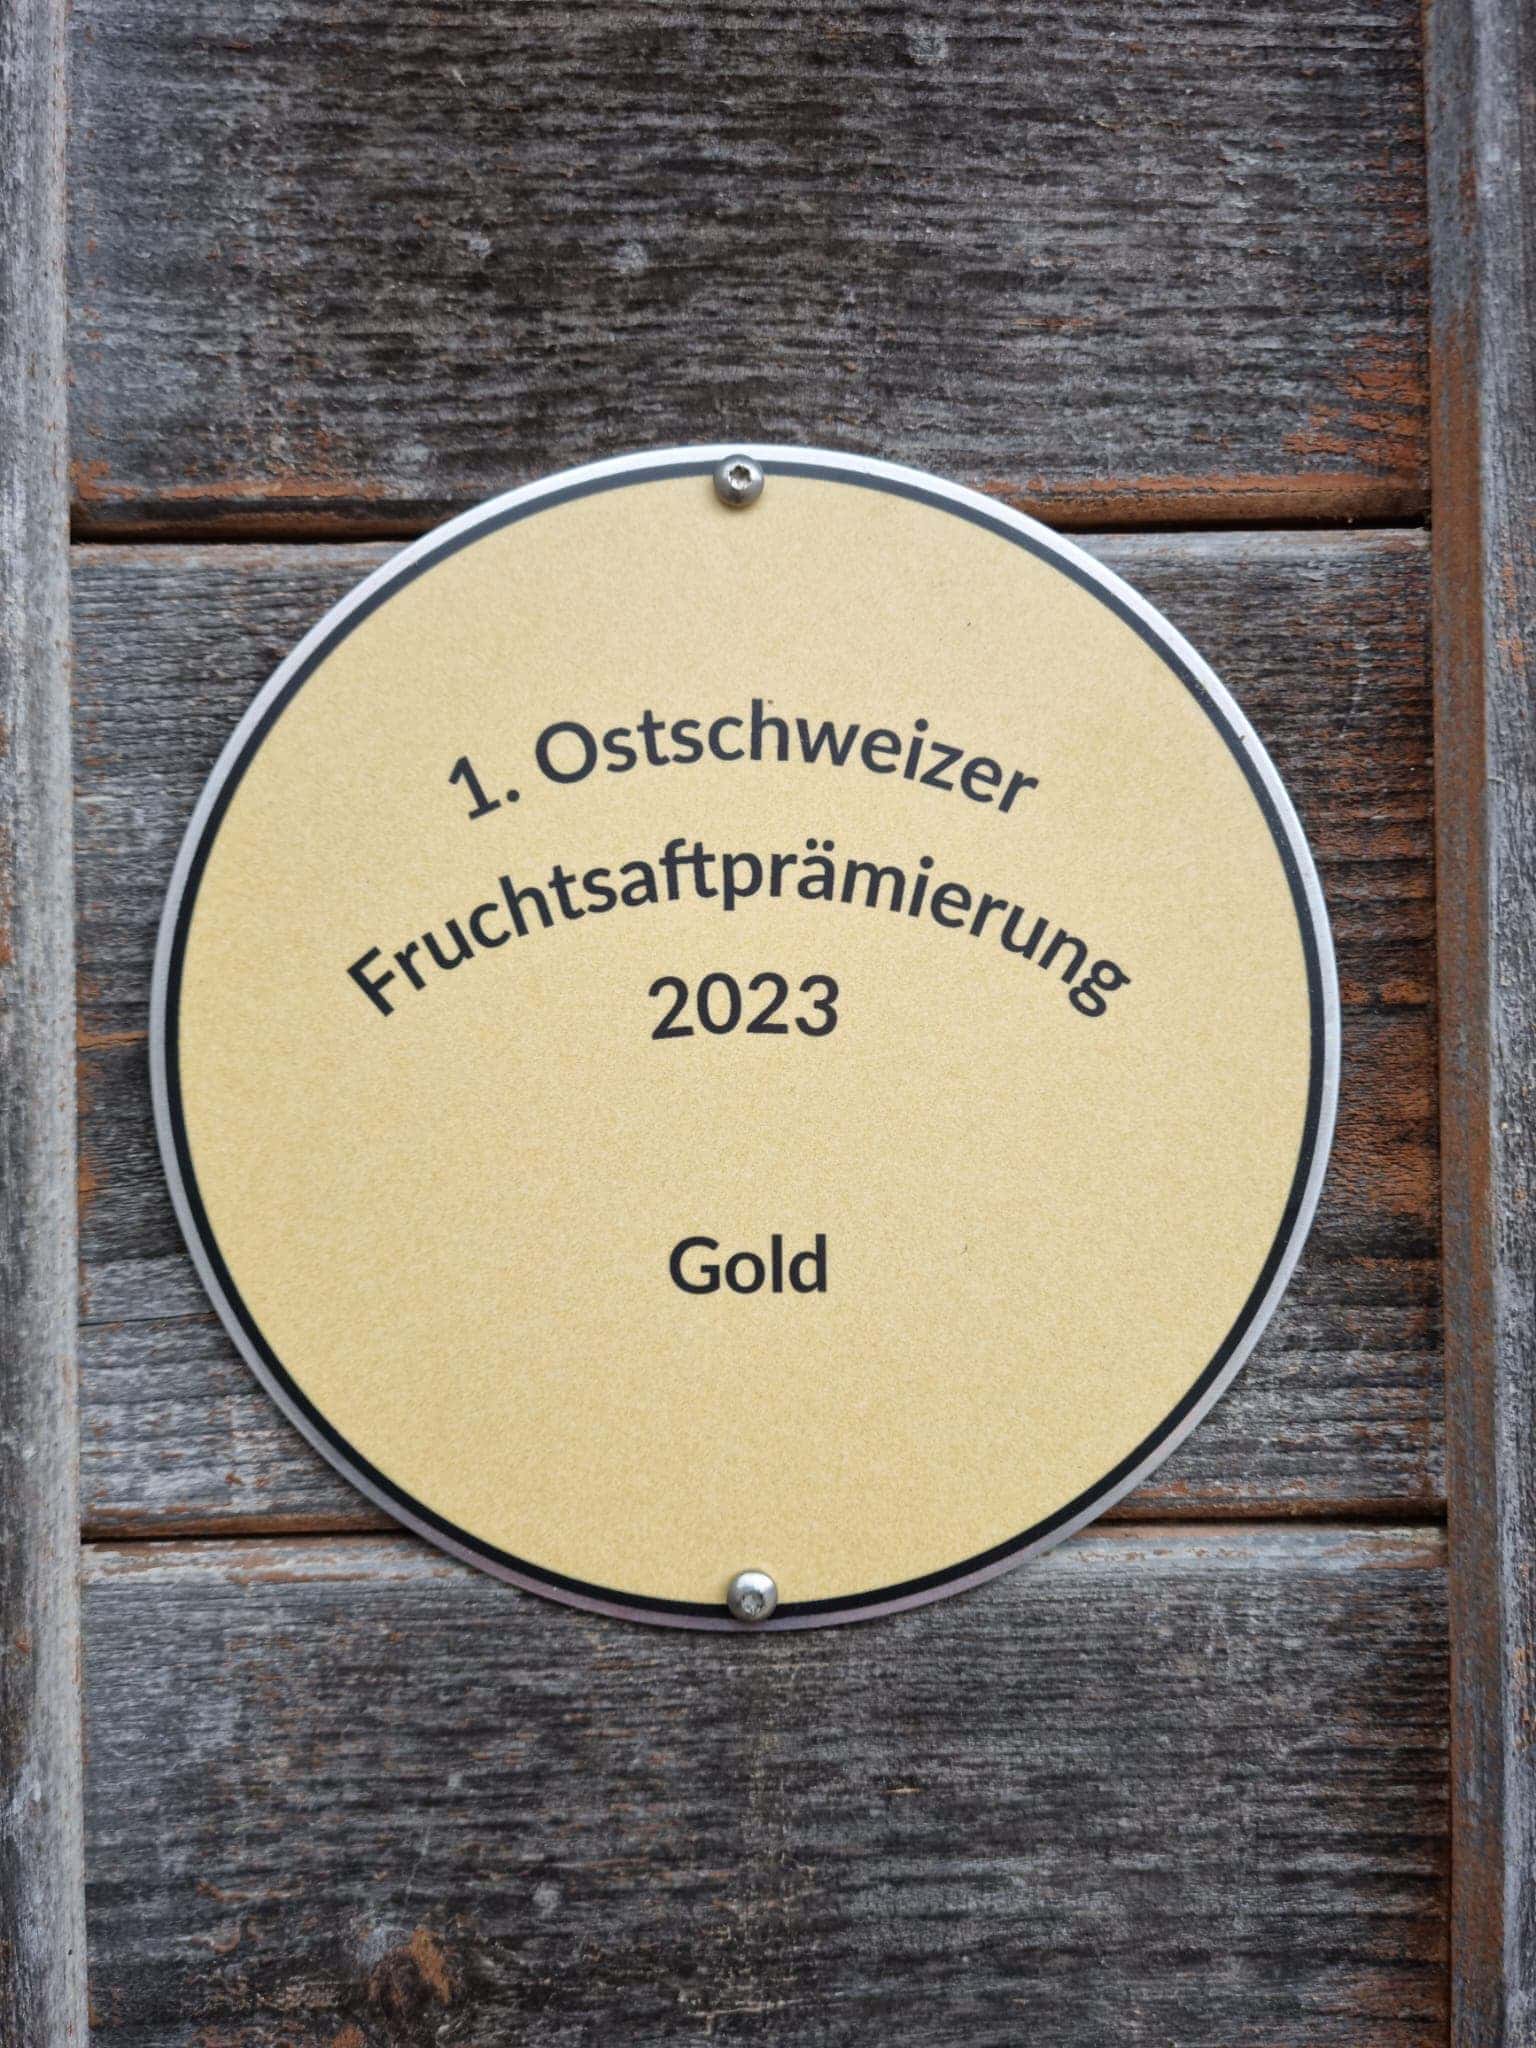 Goldmedaille der 1. 'Ostschweizer Fruchtsaftprämierung'